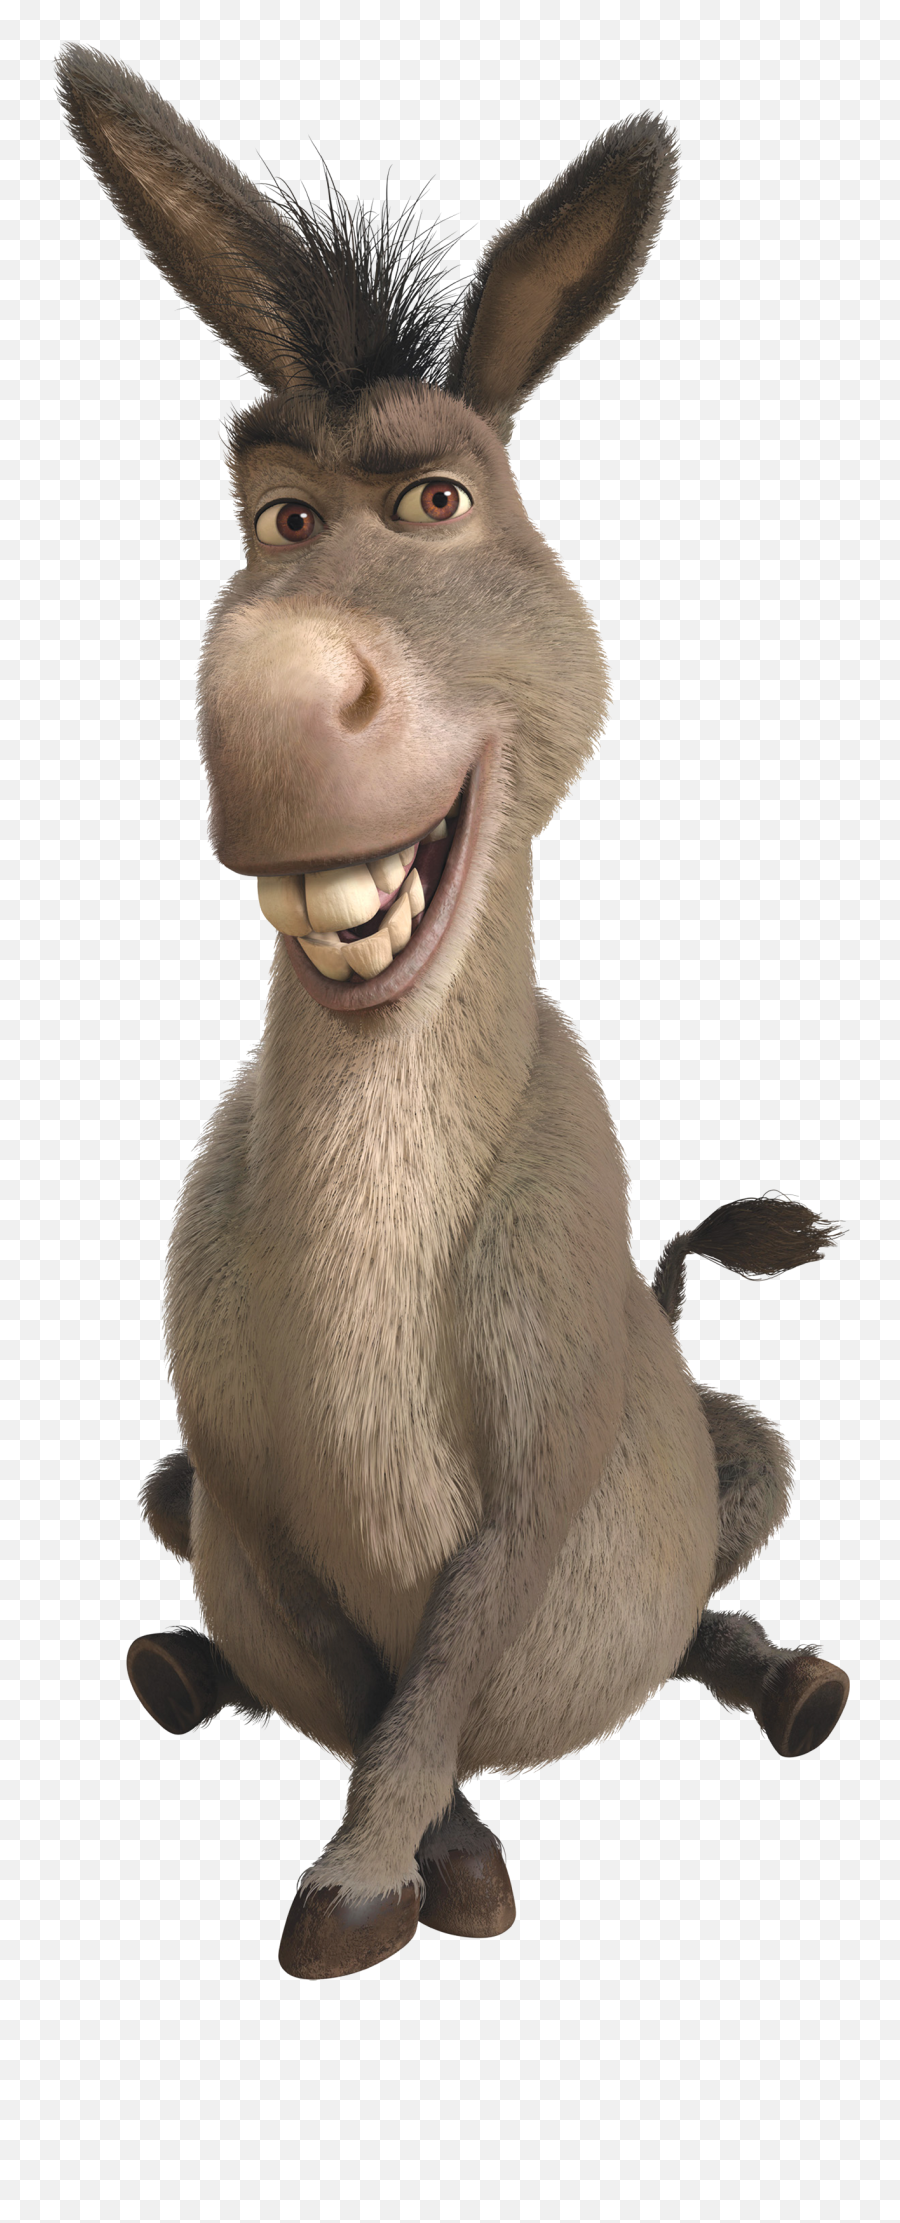 Donkey Png Images Free Download - Donkey Shrek Emoji,Donkey Emoji